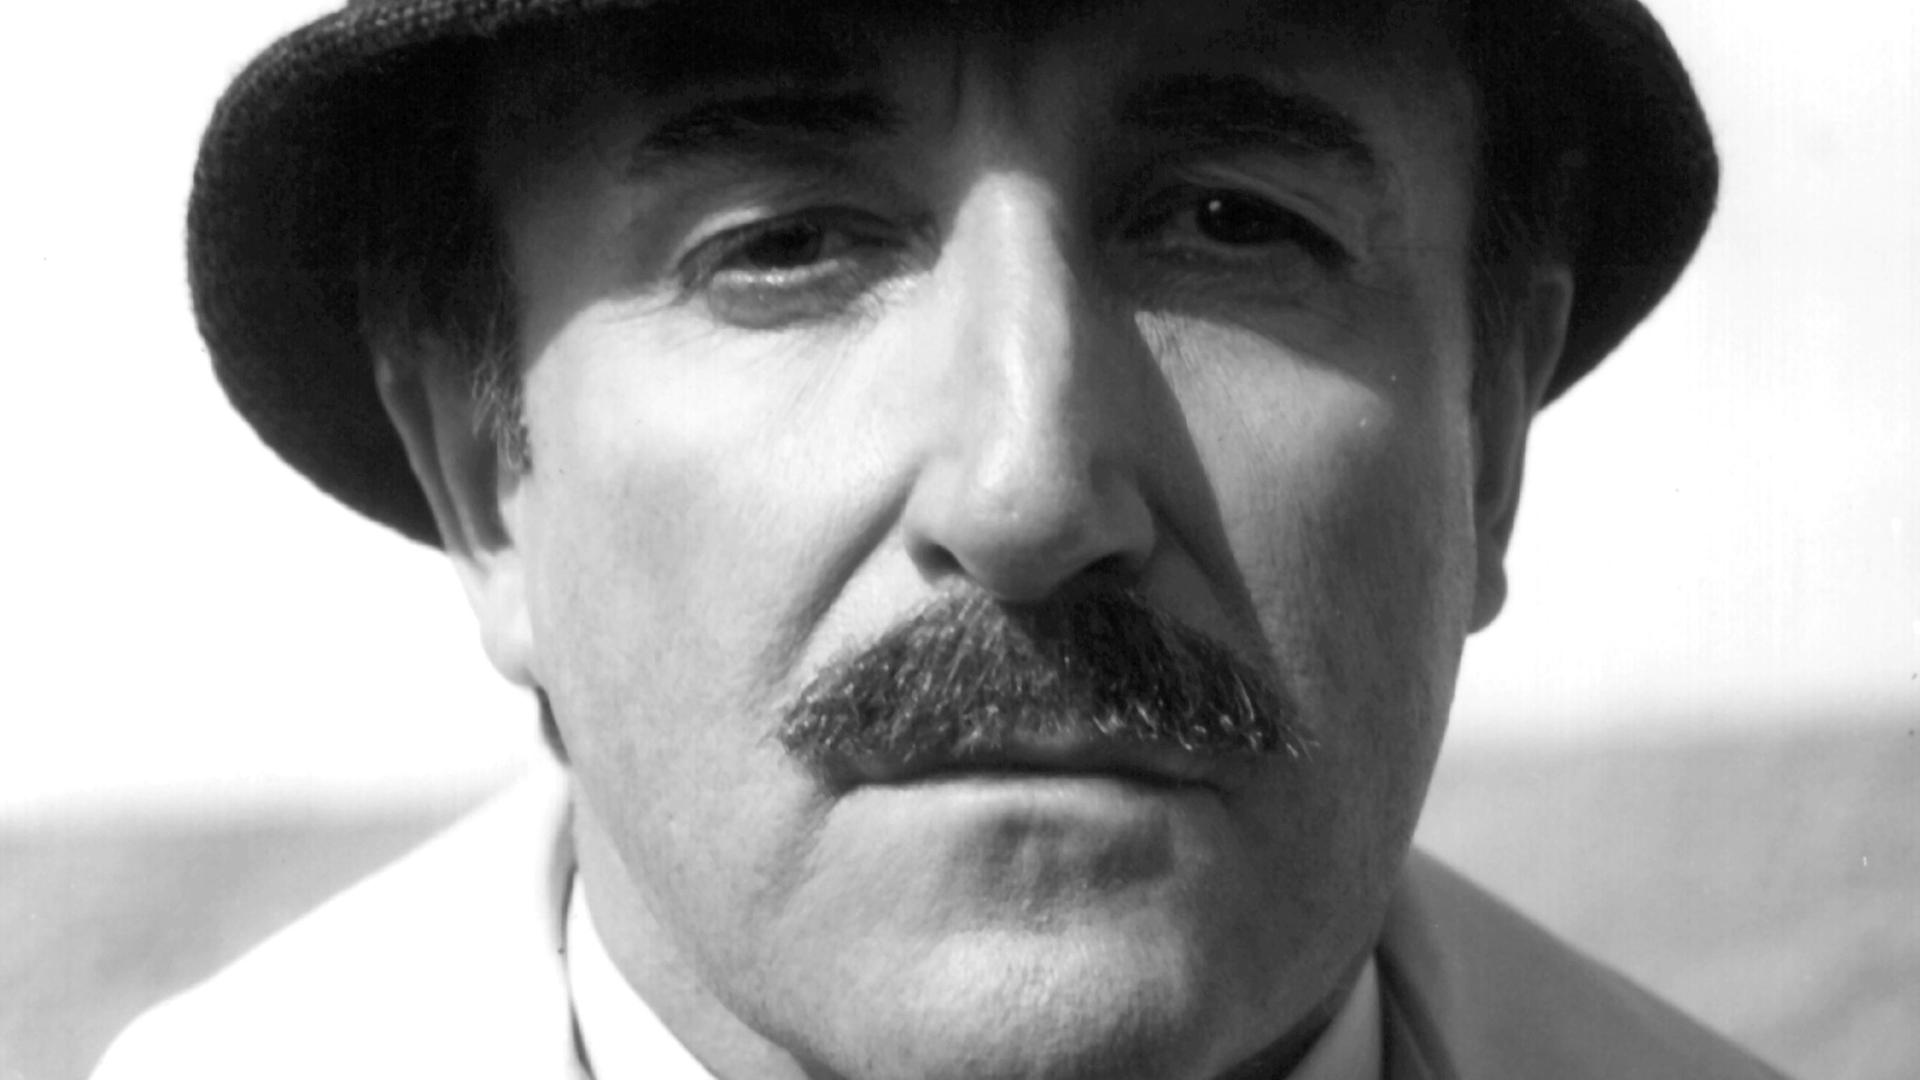 Der britische Schauspieler Peter Sellers als Inspektor Clouseau in dem Film "Trail Of The Pink Panther", aufgenommen 1982. Sellers galt als der größte britische Komiker seiner Zeit.